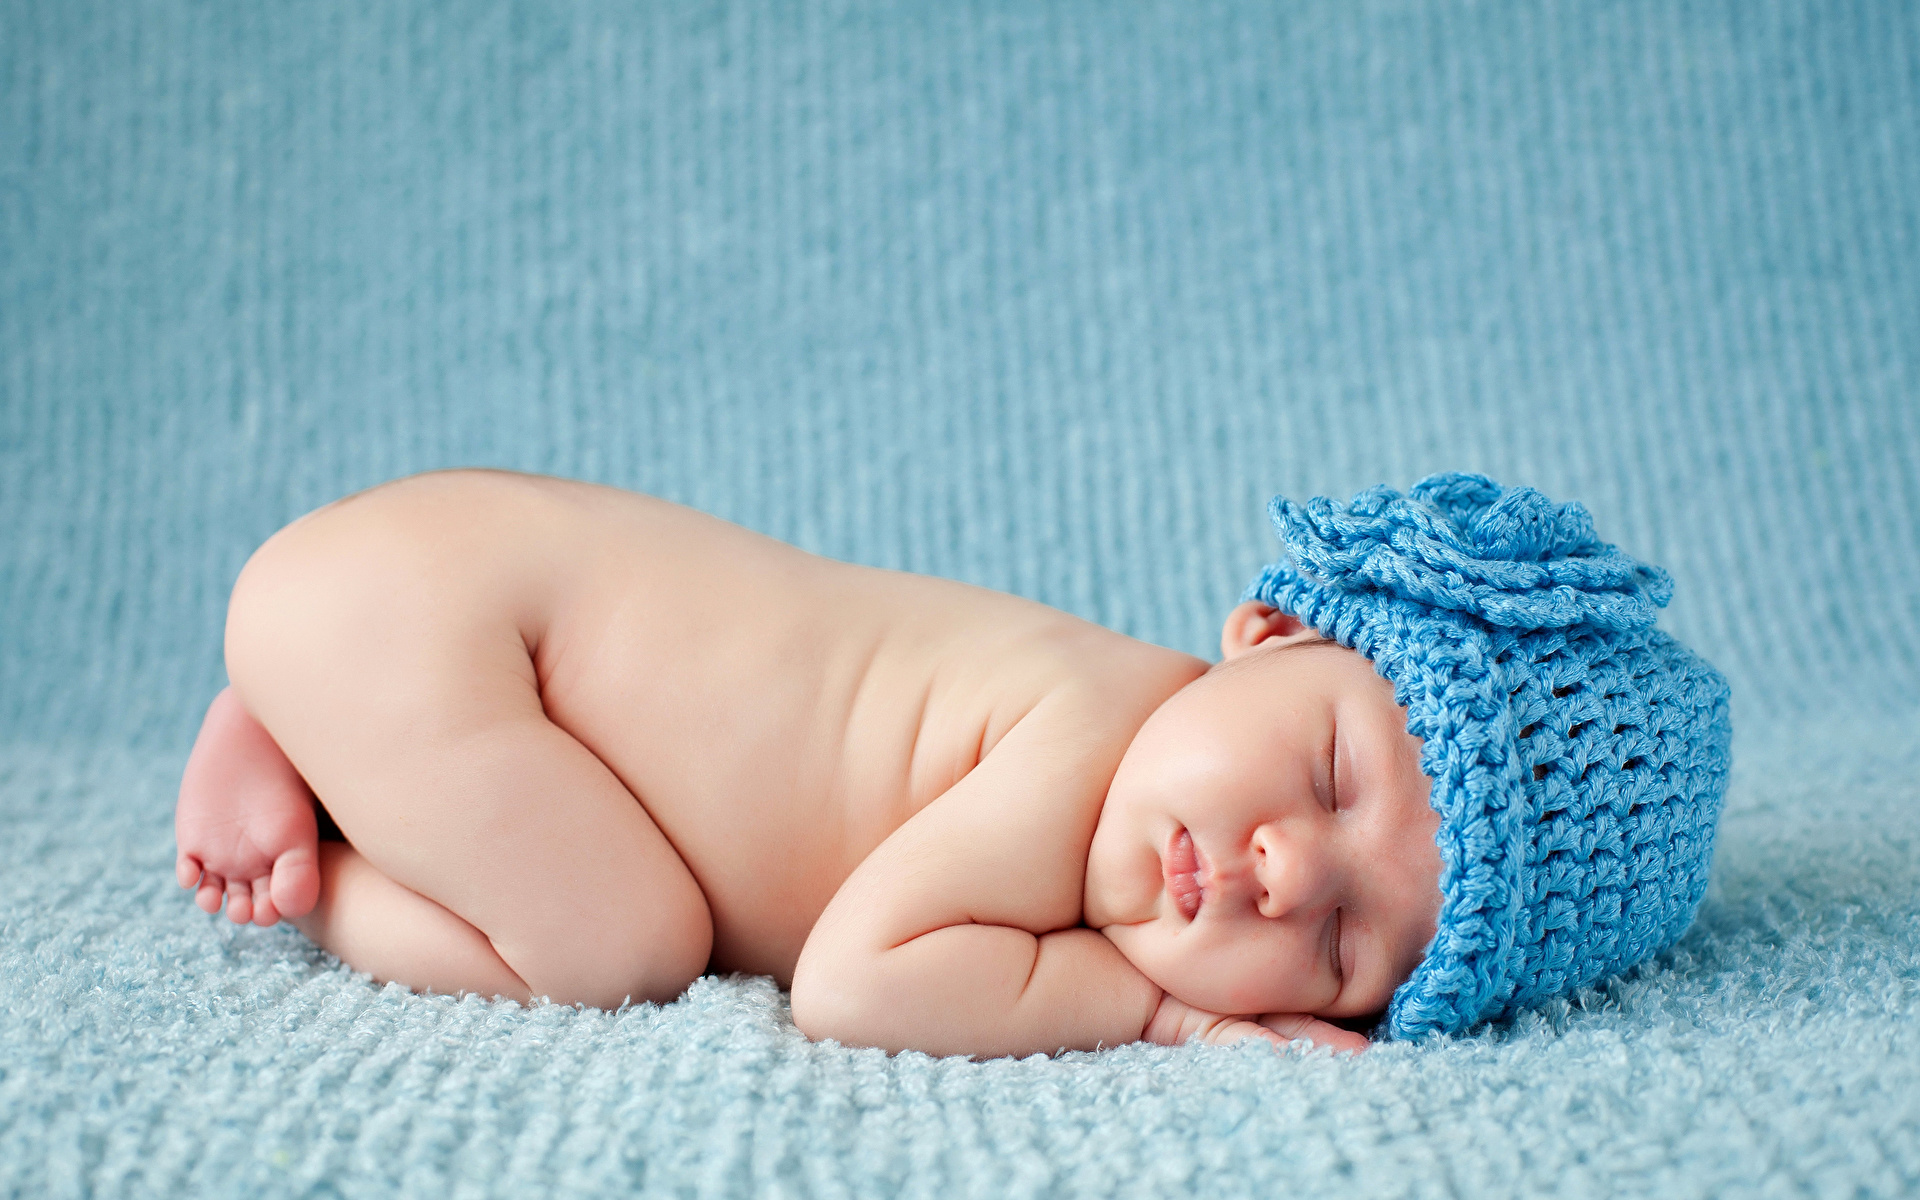 Фотография грудной ребёнок Дети Шапки спящий 1920x1200 Младенцы младенец младенца ребёнок сон Спит спят шапка в шапке